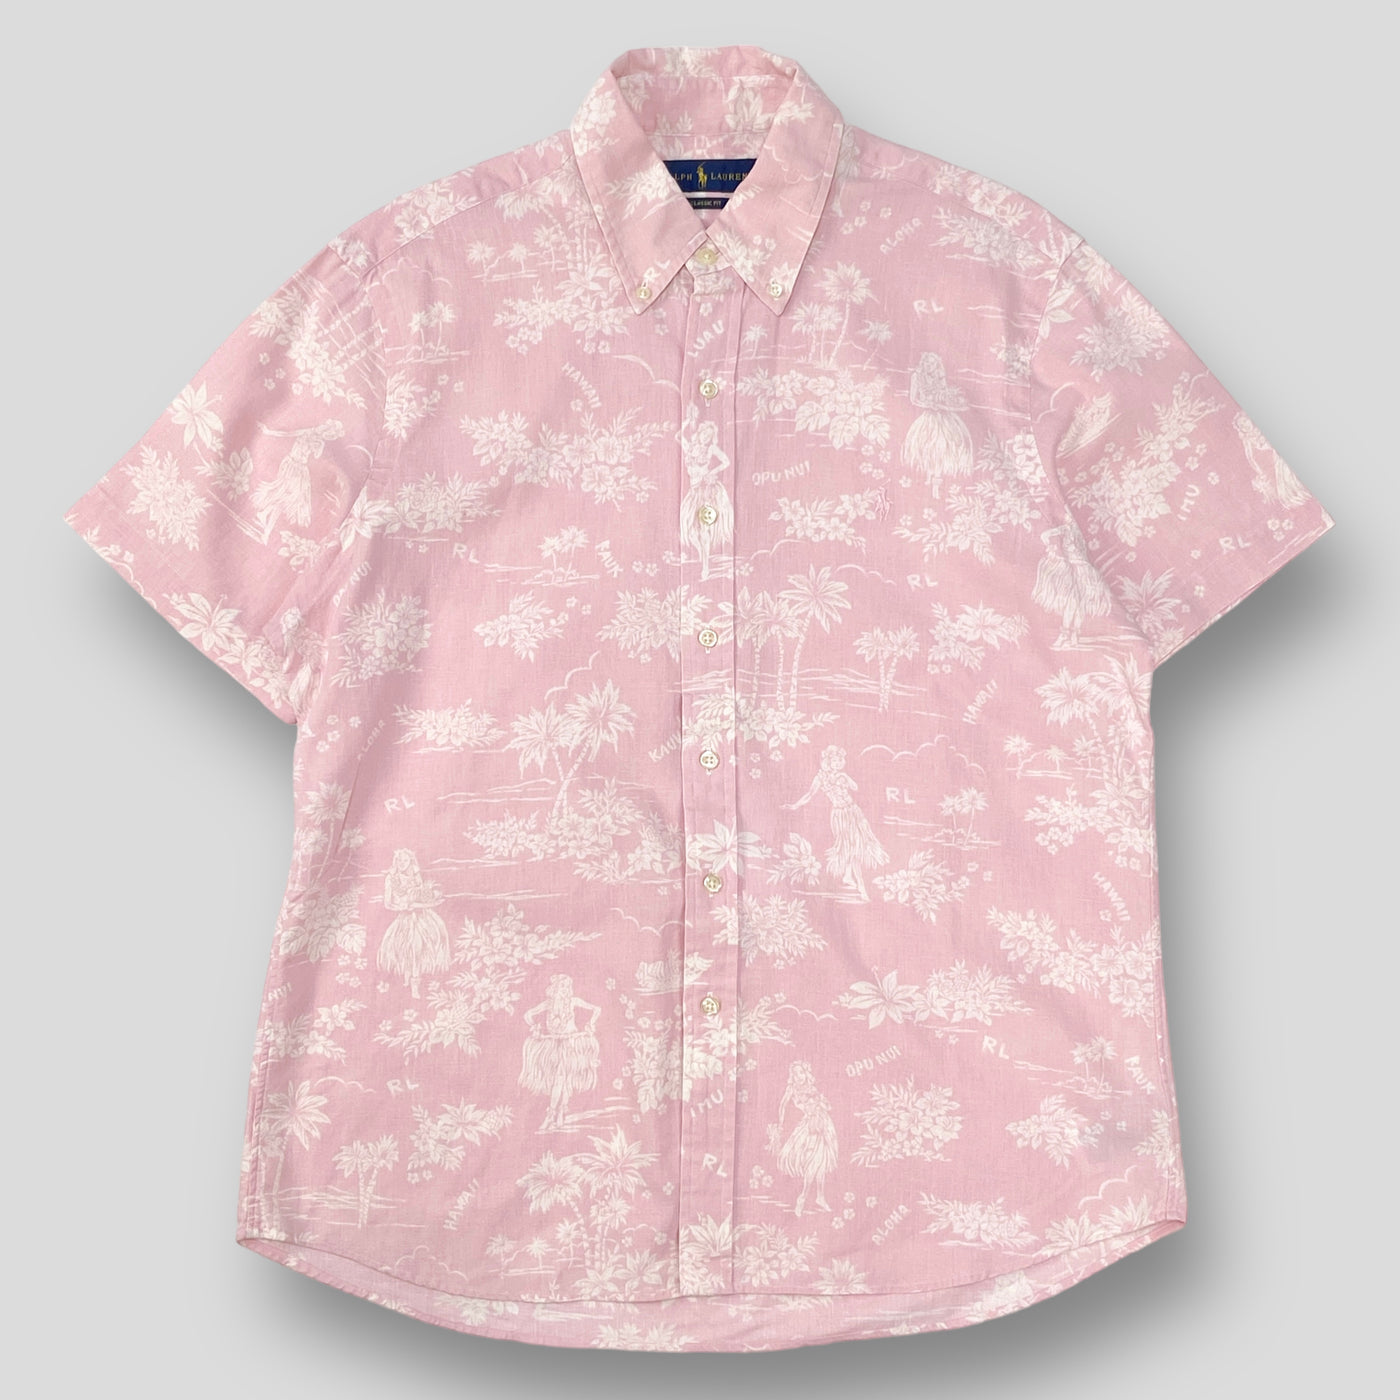 クラシックフィット ポニー刺繍 リネンコットン ハワイアンプリントBDシャツ M